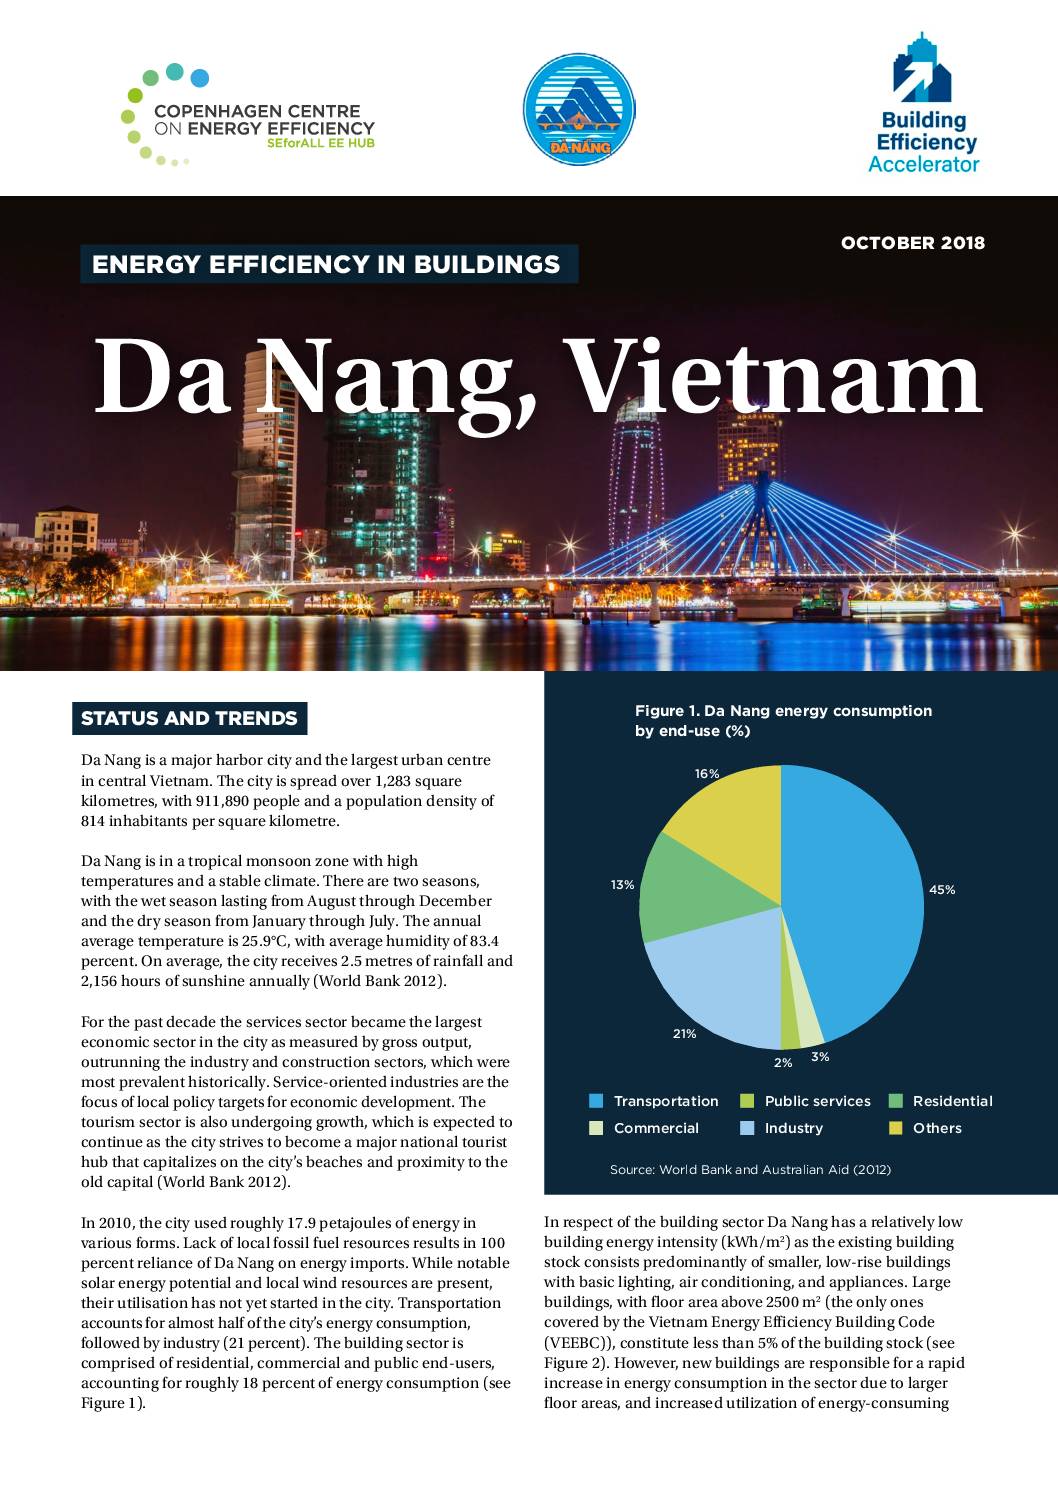 Energy Efficiency in Buildings; Da Nang, Vietnam